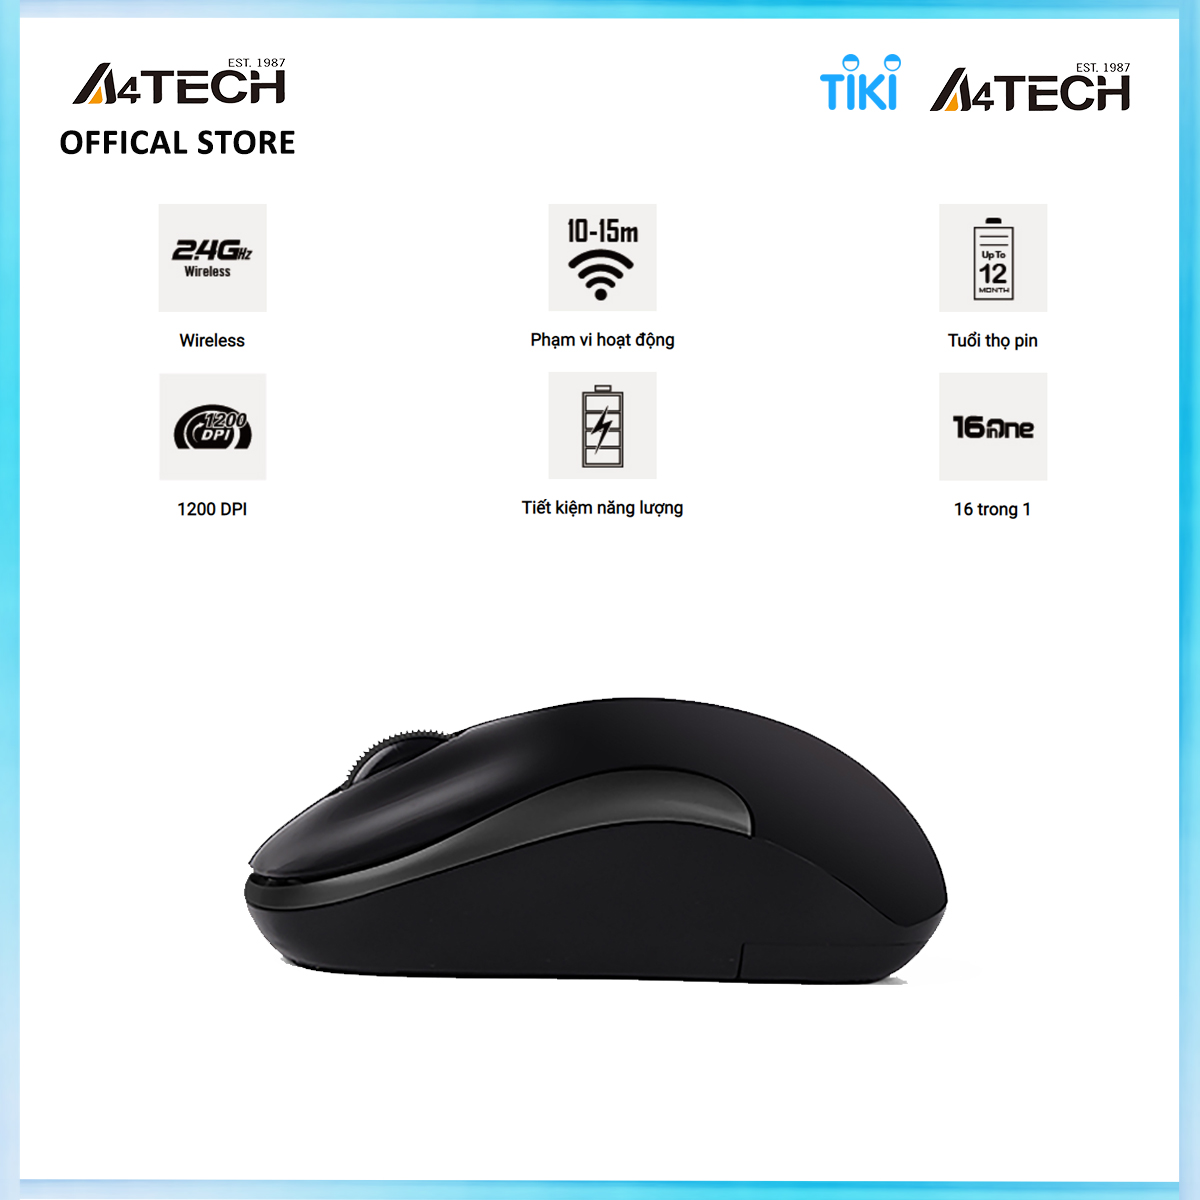 Chuột vi tính Wireless A4tech Small Box A4TECH G3-300N - Hàng chính hãng